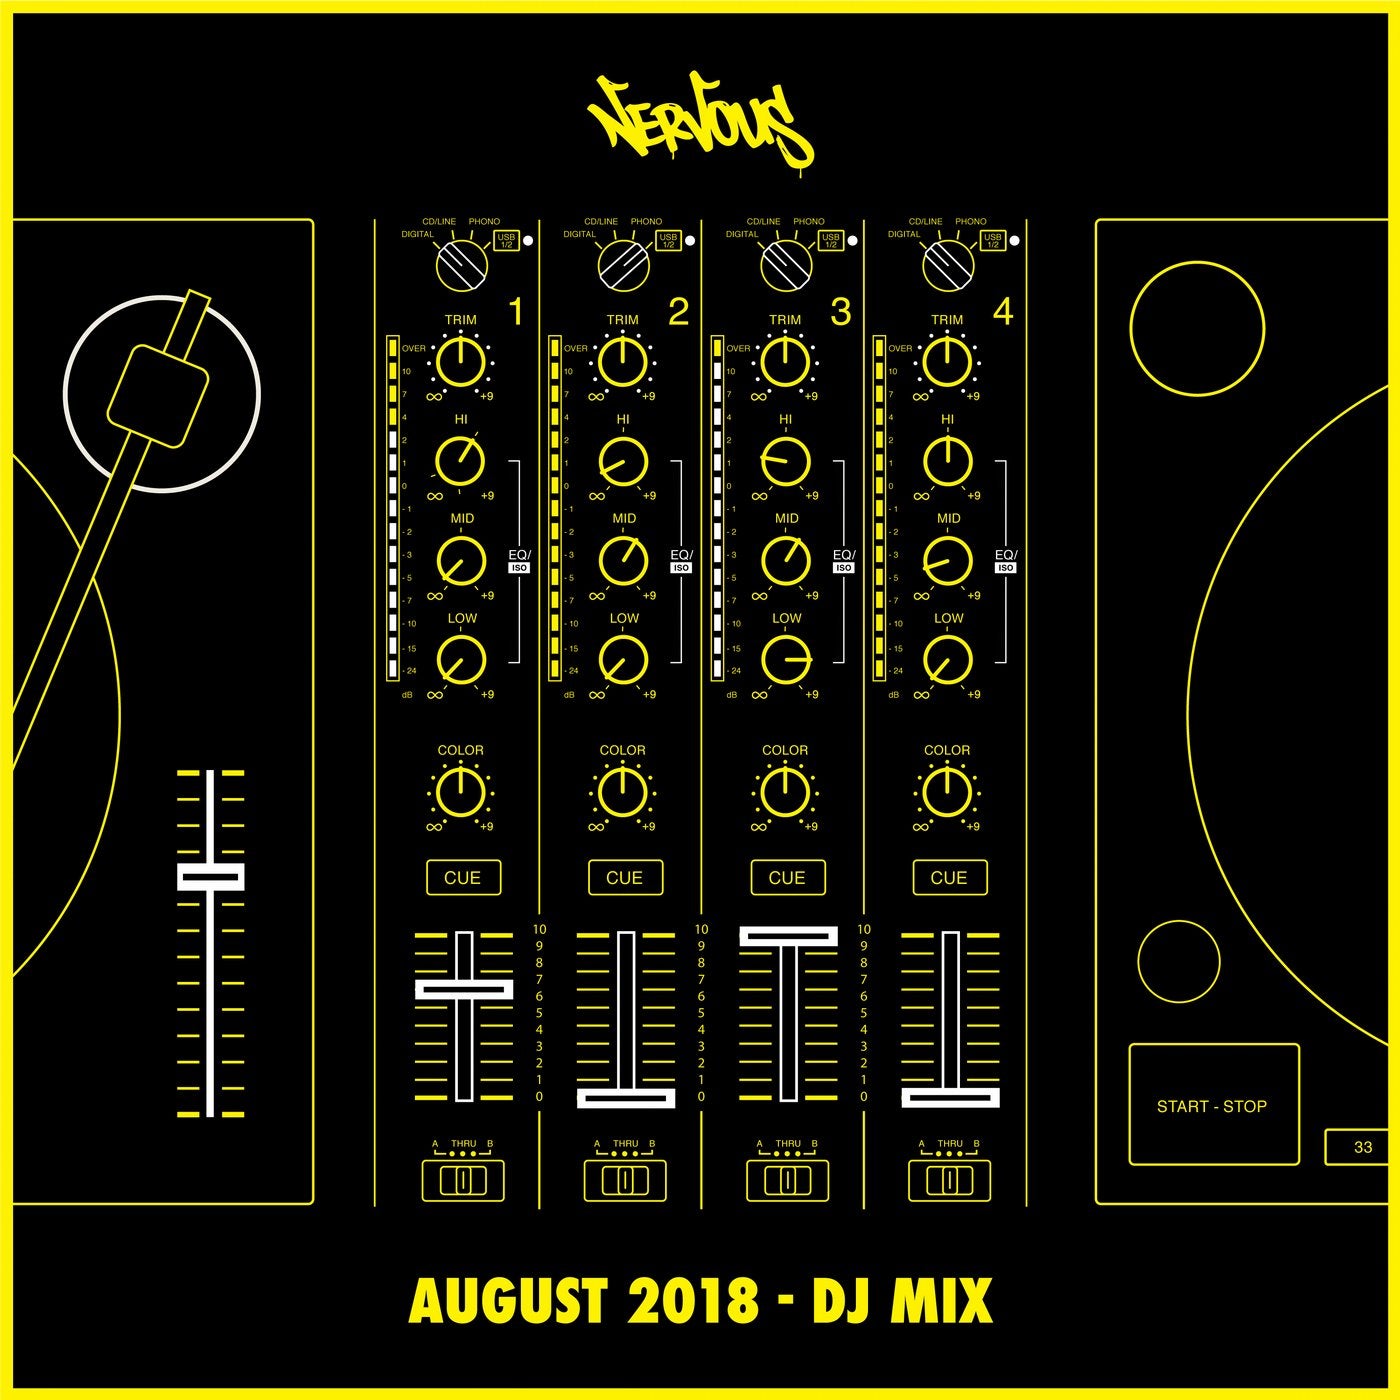 Nervous August 2018 - DJ Mix